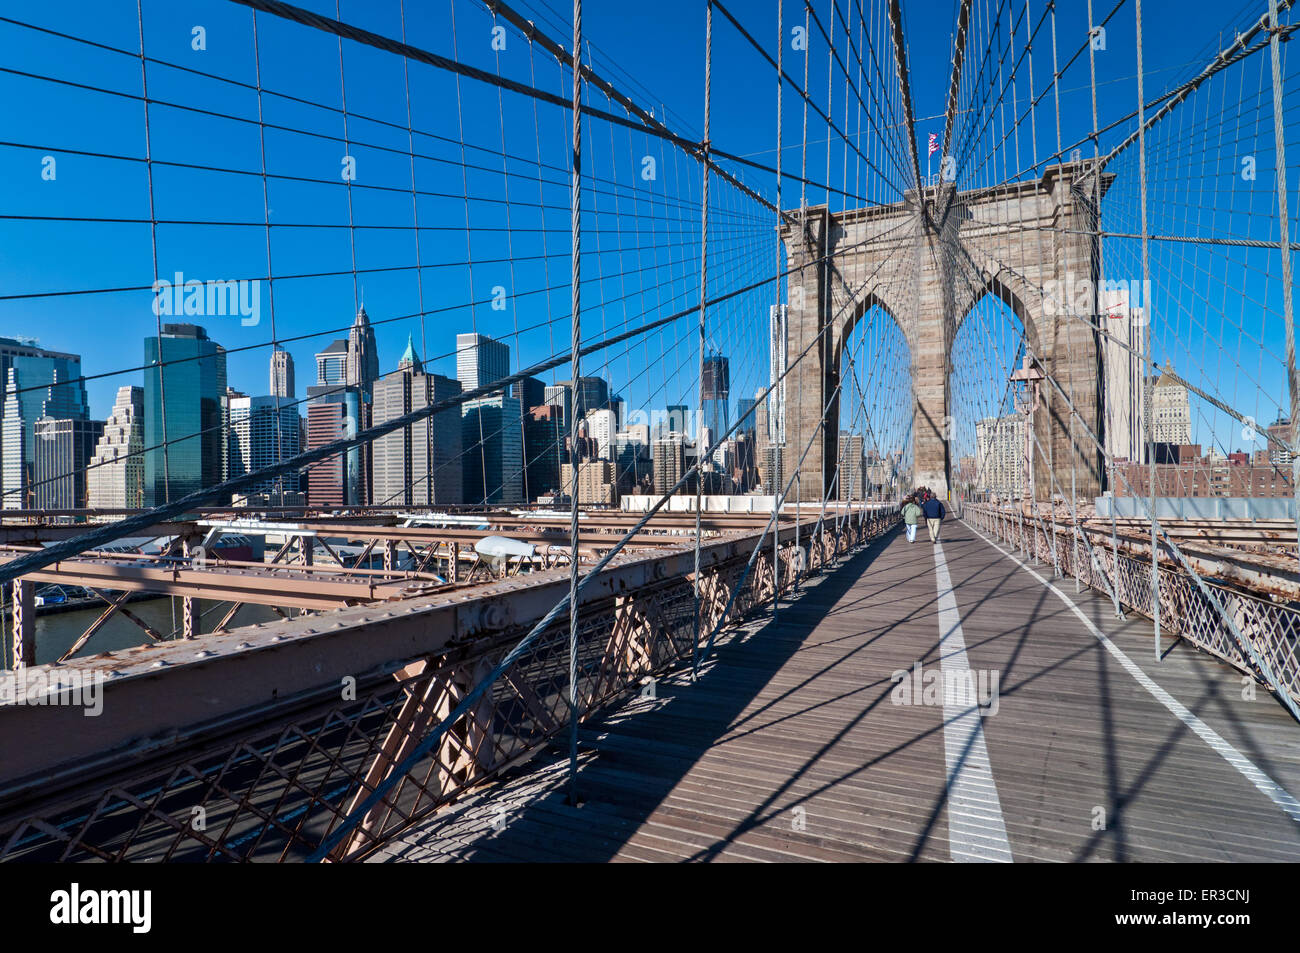 Les personnes qui franchissent le pont de Brooklyn à New York, au 18 novembre 2011, le plus ancien des ponts de suspension aux États-Unis. Banque D'Images